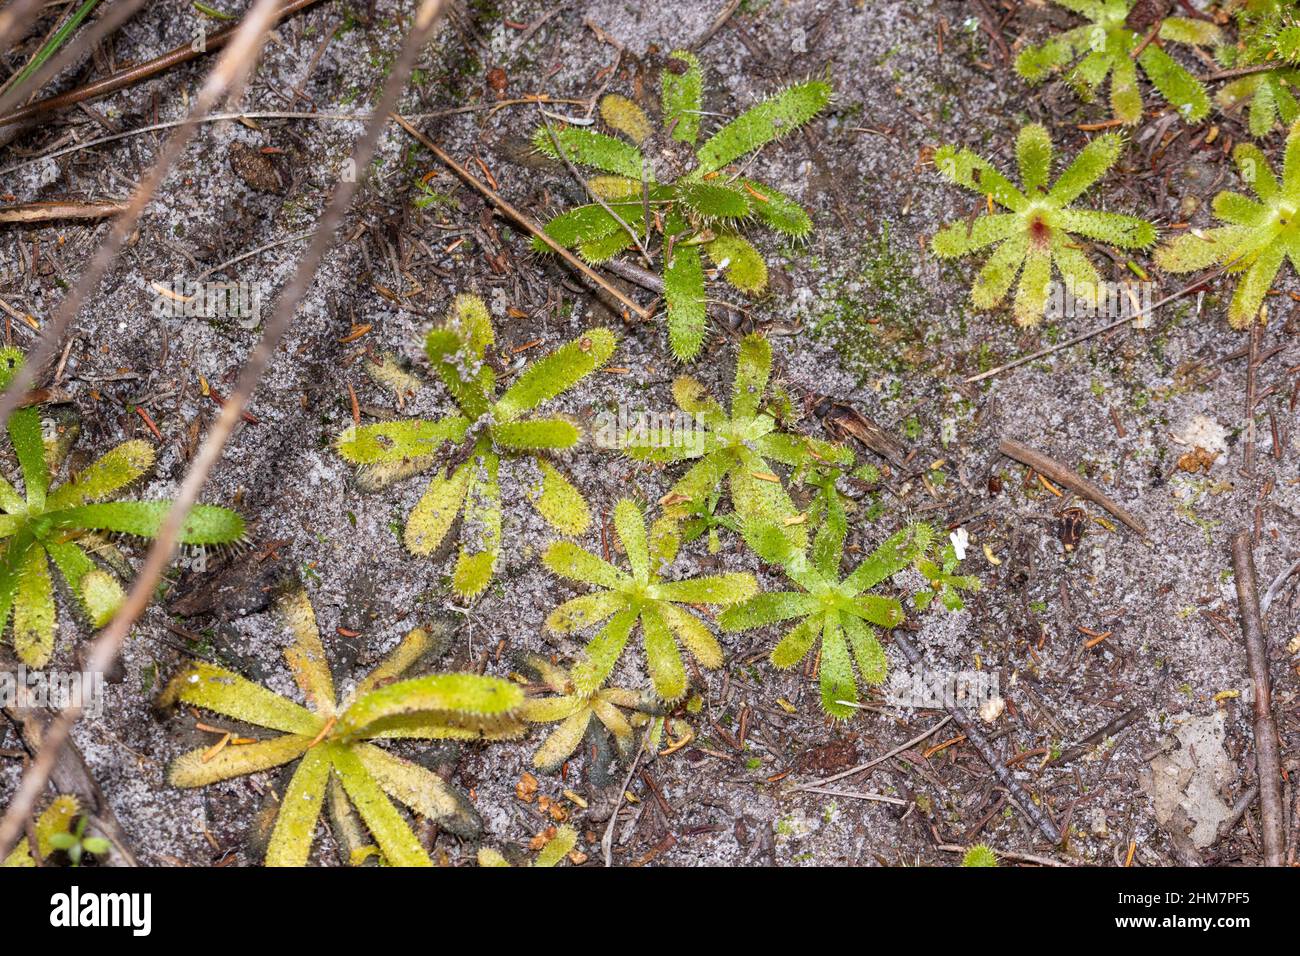 Rosette verdi della pianta carnivora Drosera zeyheri visto in habitat naturale a sud di Città del Capo, Capo occidentale del Sud Africa Foto Stock